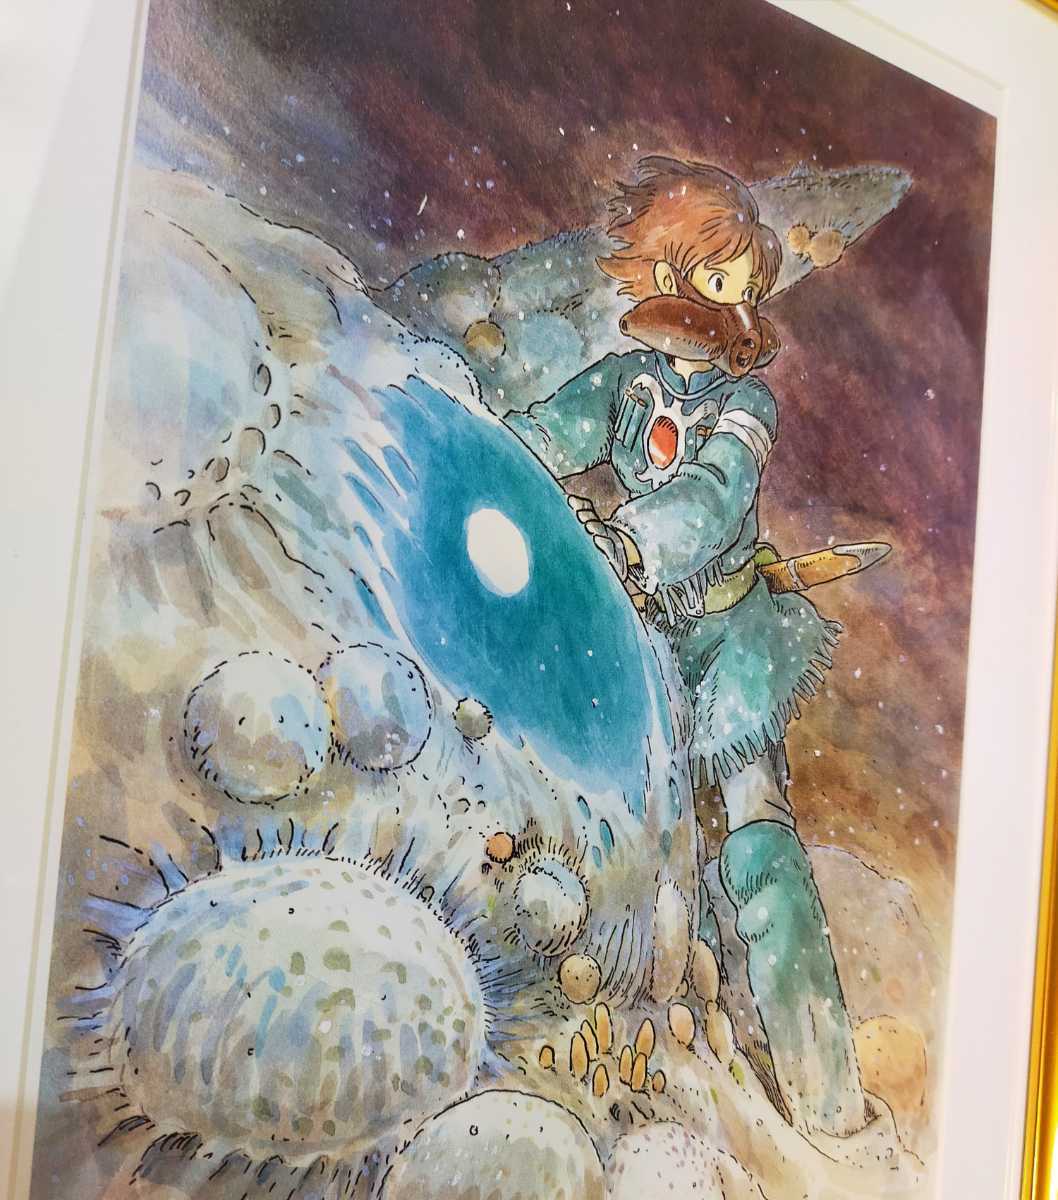 [ рамка товар ] Studio Ghibli Kaze no Tani no Naushika Ghibli официальный альбом с иллюстрациями порез .. Animage акварельная живопись Miyazaki . осмотр ) Ghibli постер. открытка 